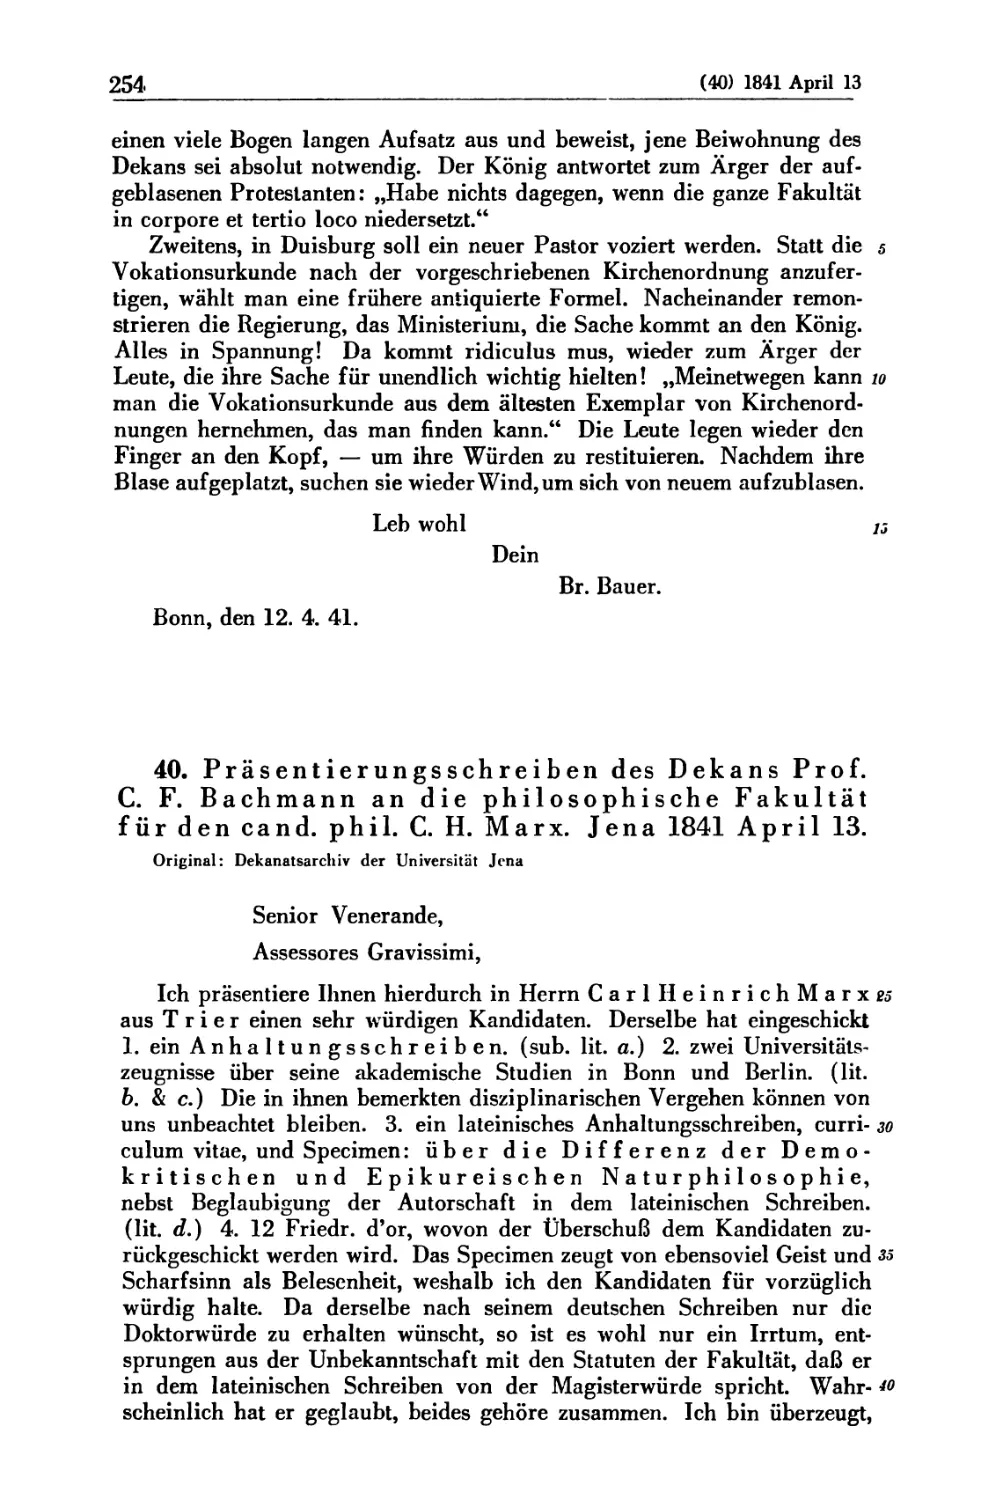 40. Präsentierungsschreiben des Dekans Prof. C. F. Bachmann an die philosophische Fakultät für den cand. phil. C. H. Marx. Jena 1841 April 13